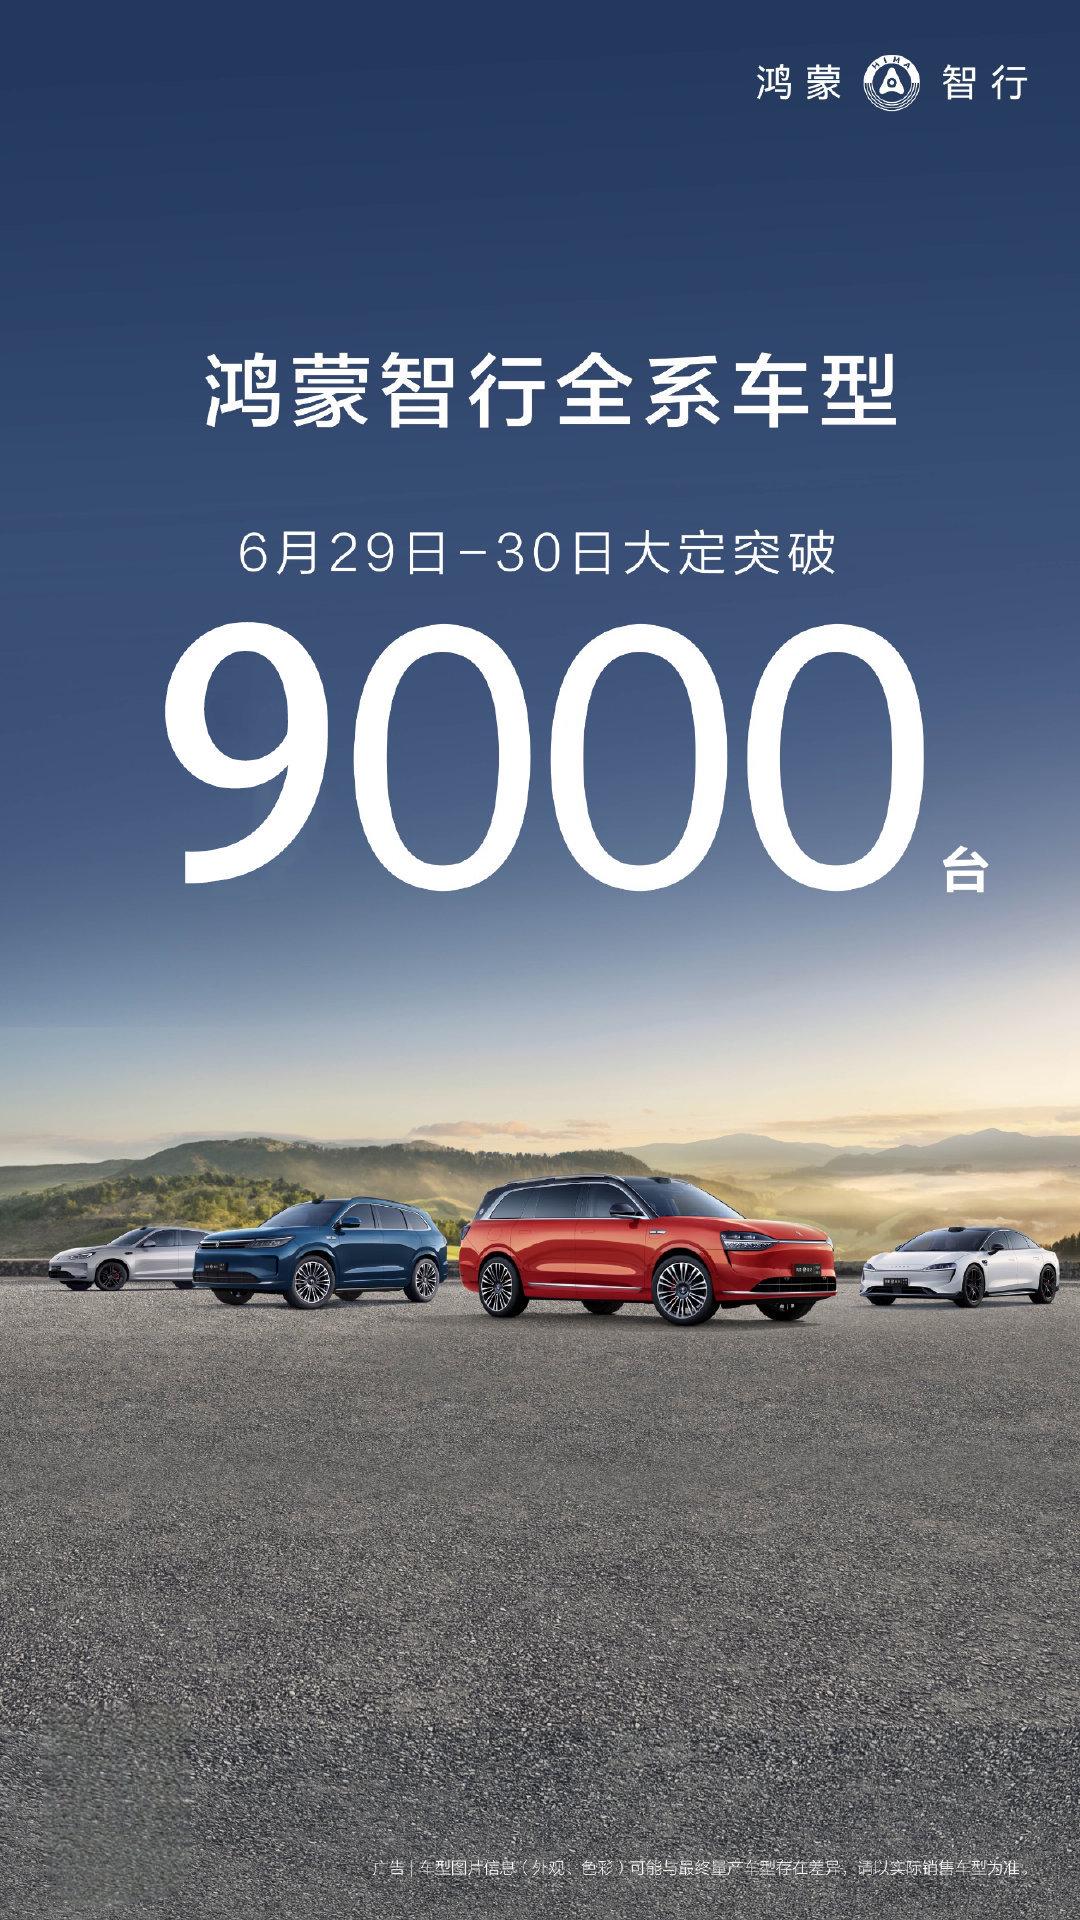 鸿蒙智行全系车型6月29日至30日大定突破9000辆 第1张